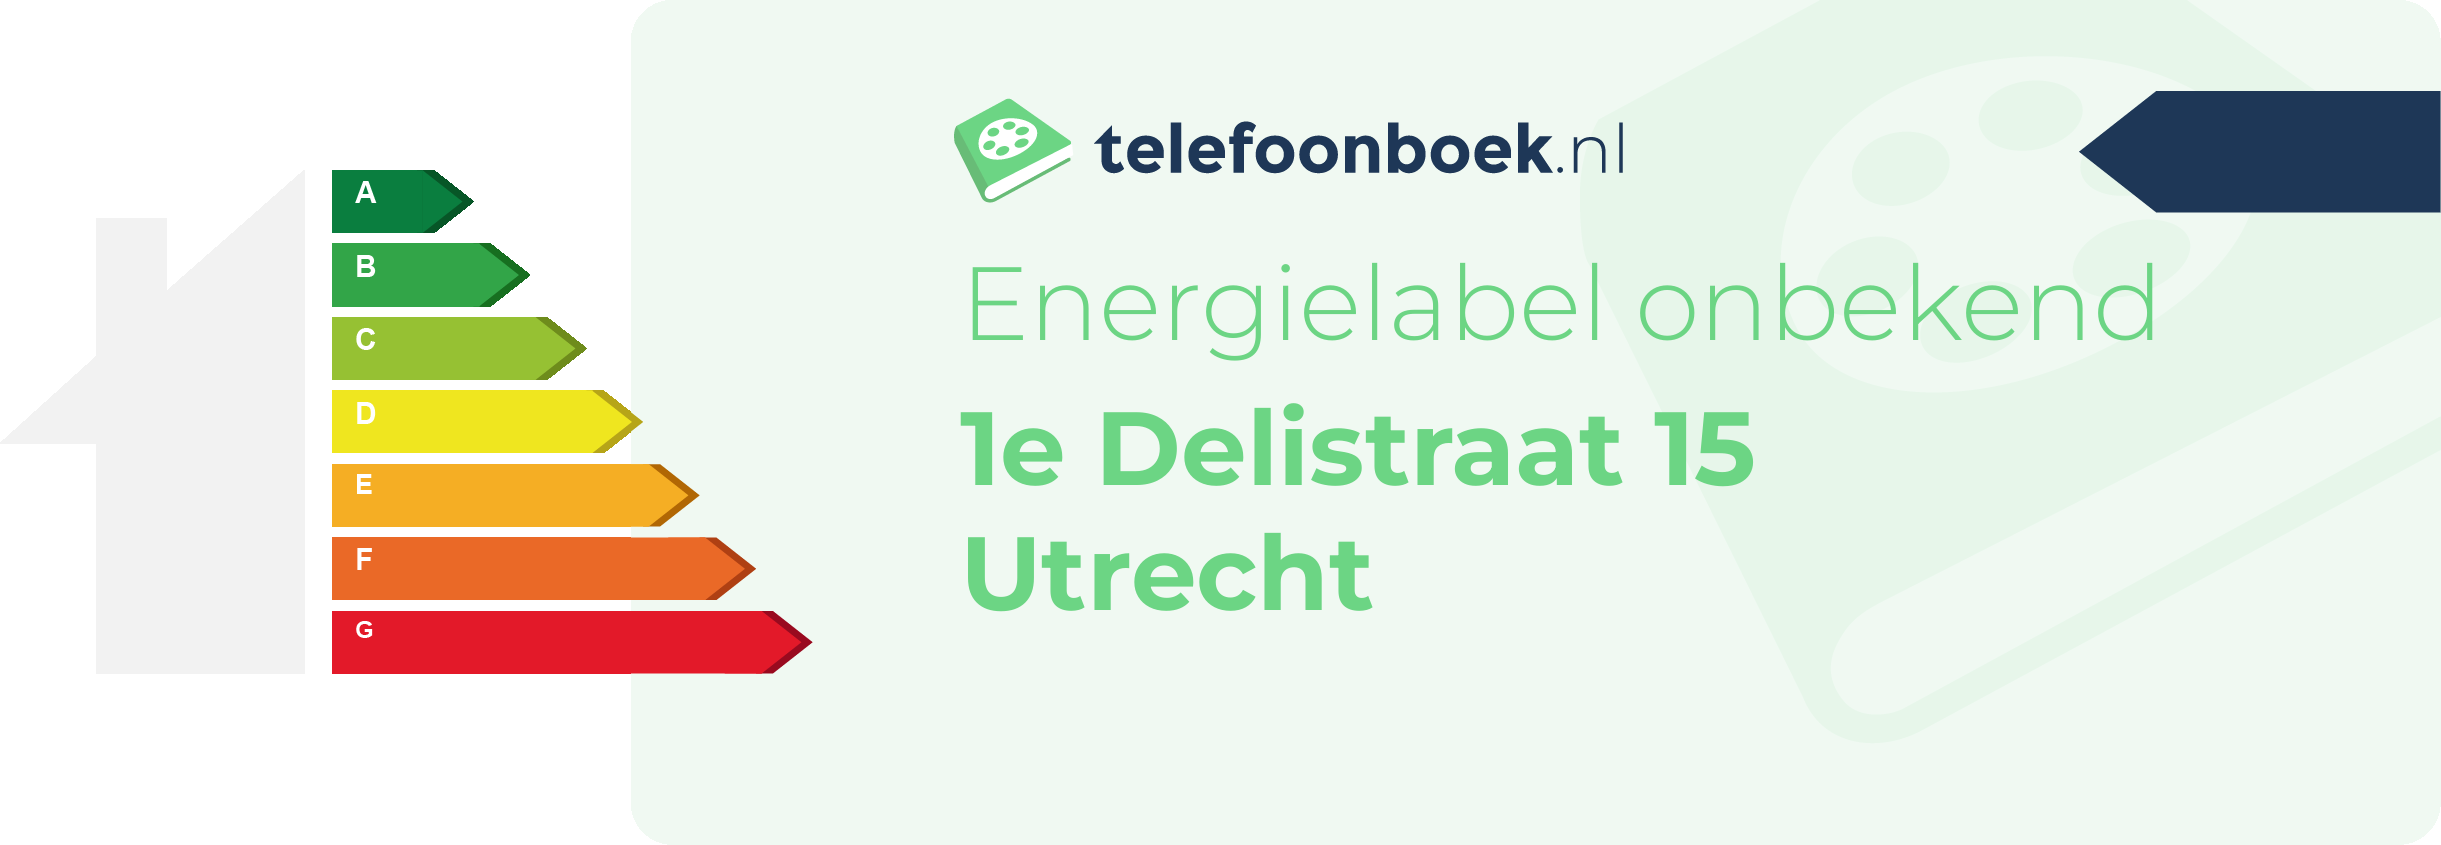 Energielabel 1e Delistraat 15 Utrecht